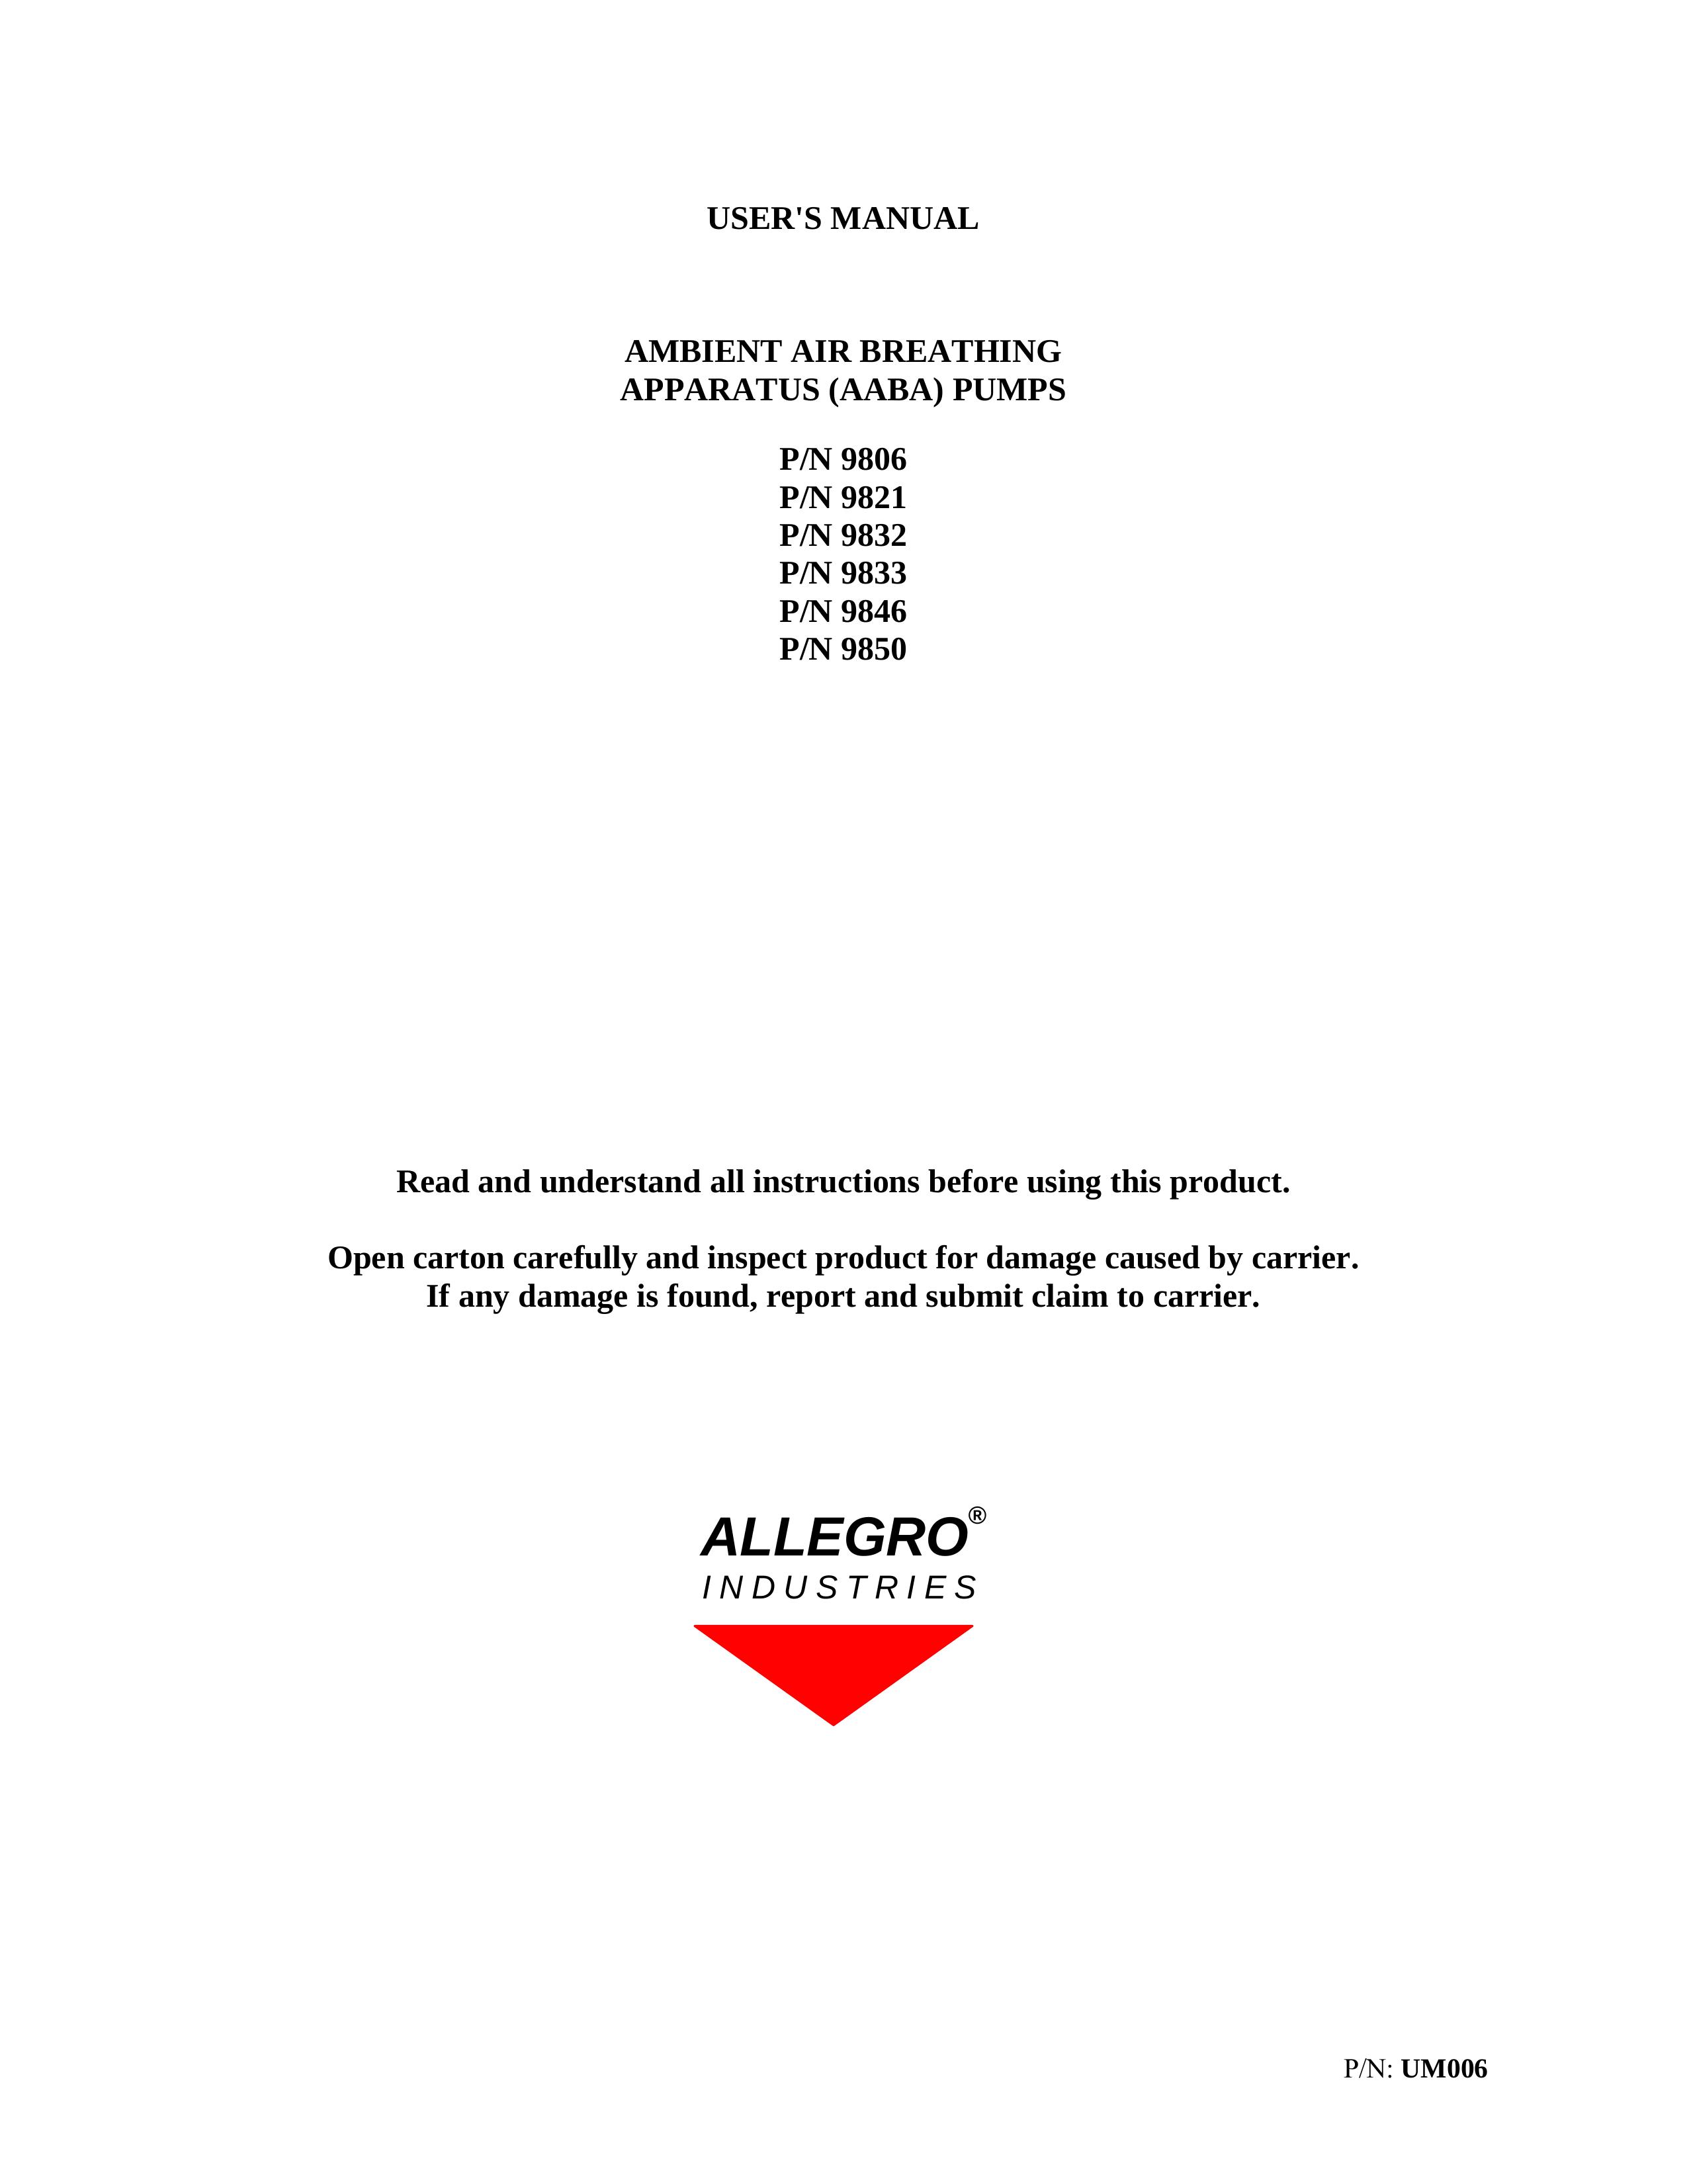 Allegro Industries 9833 Oxygen Equipment User Manual